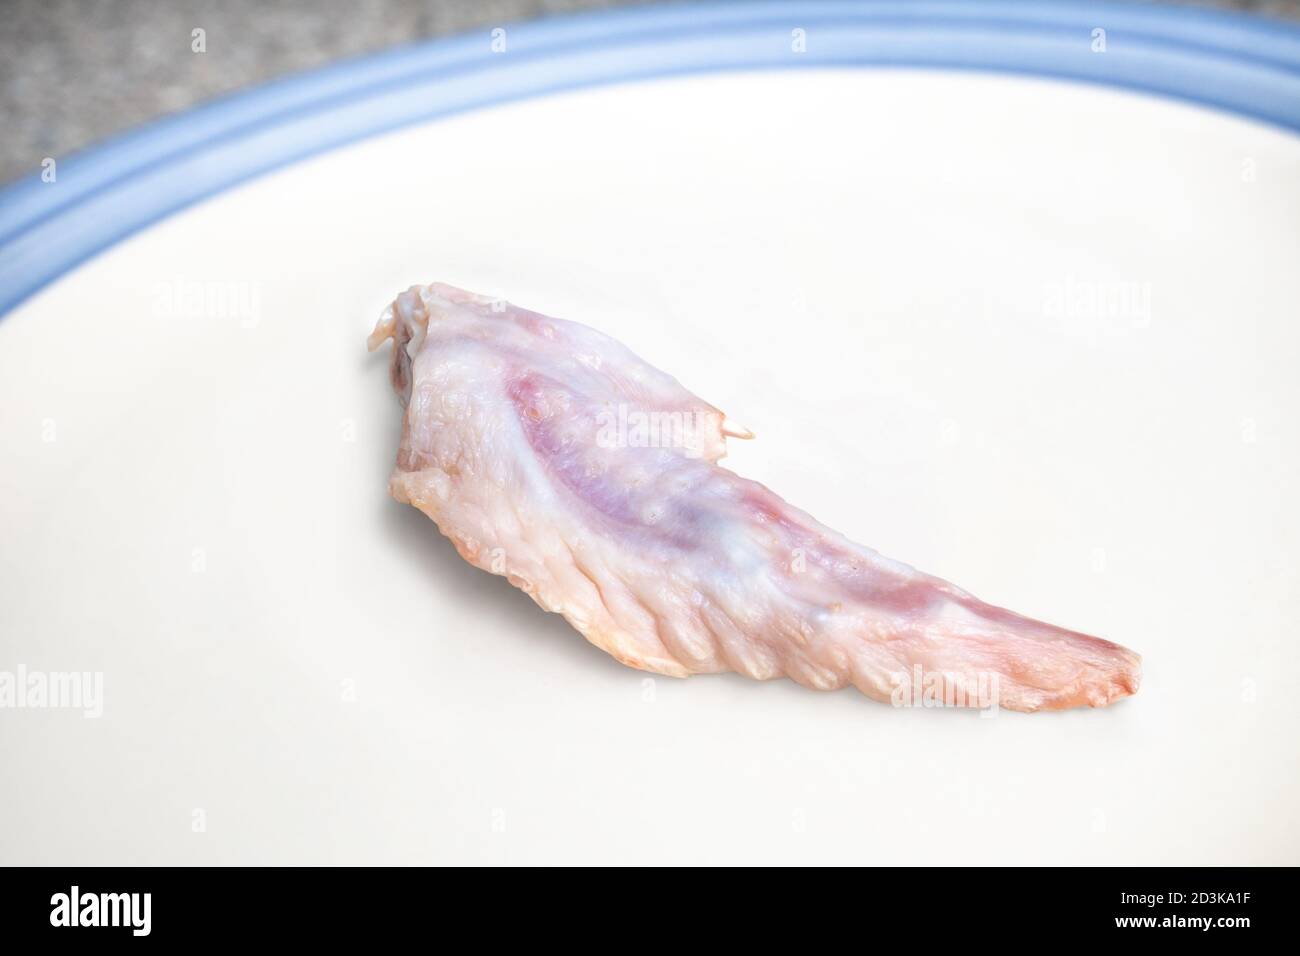 Rohe Hähnchenflügel Spitze auf einem Teller. Rosa humane Geflügelknochen. Konzept zur Fütterung von Rohkost, Beutemodell RAW (PMR) oder BARF für Katzen, Hunde und pe Stockfoto